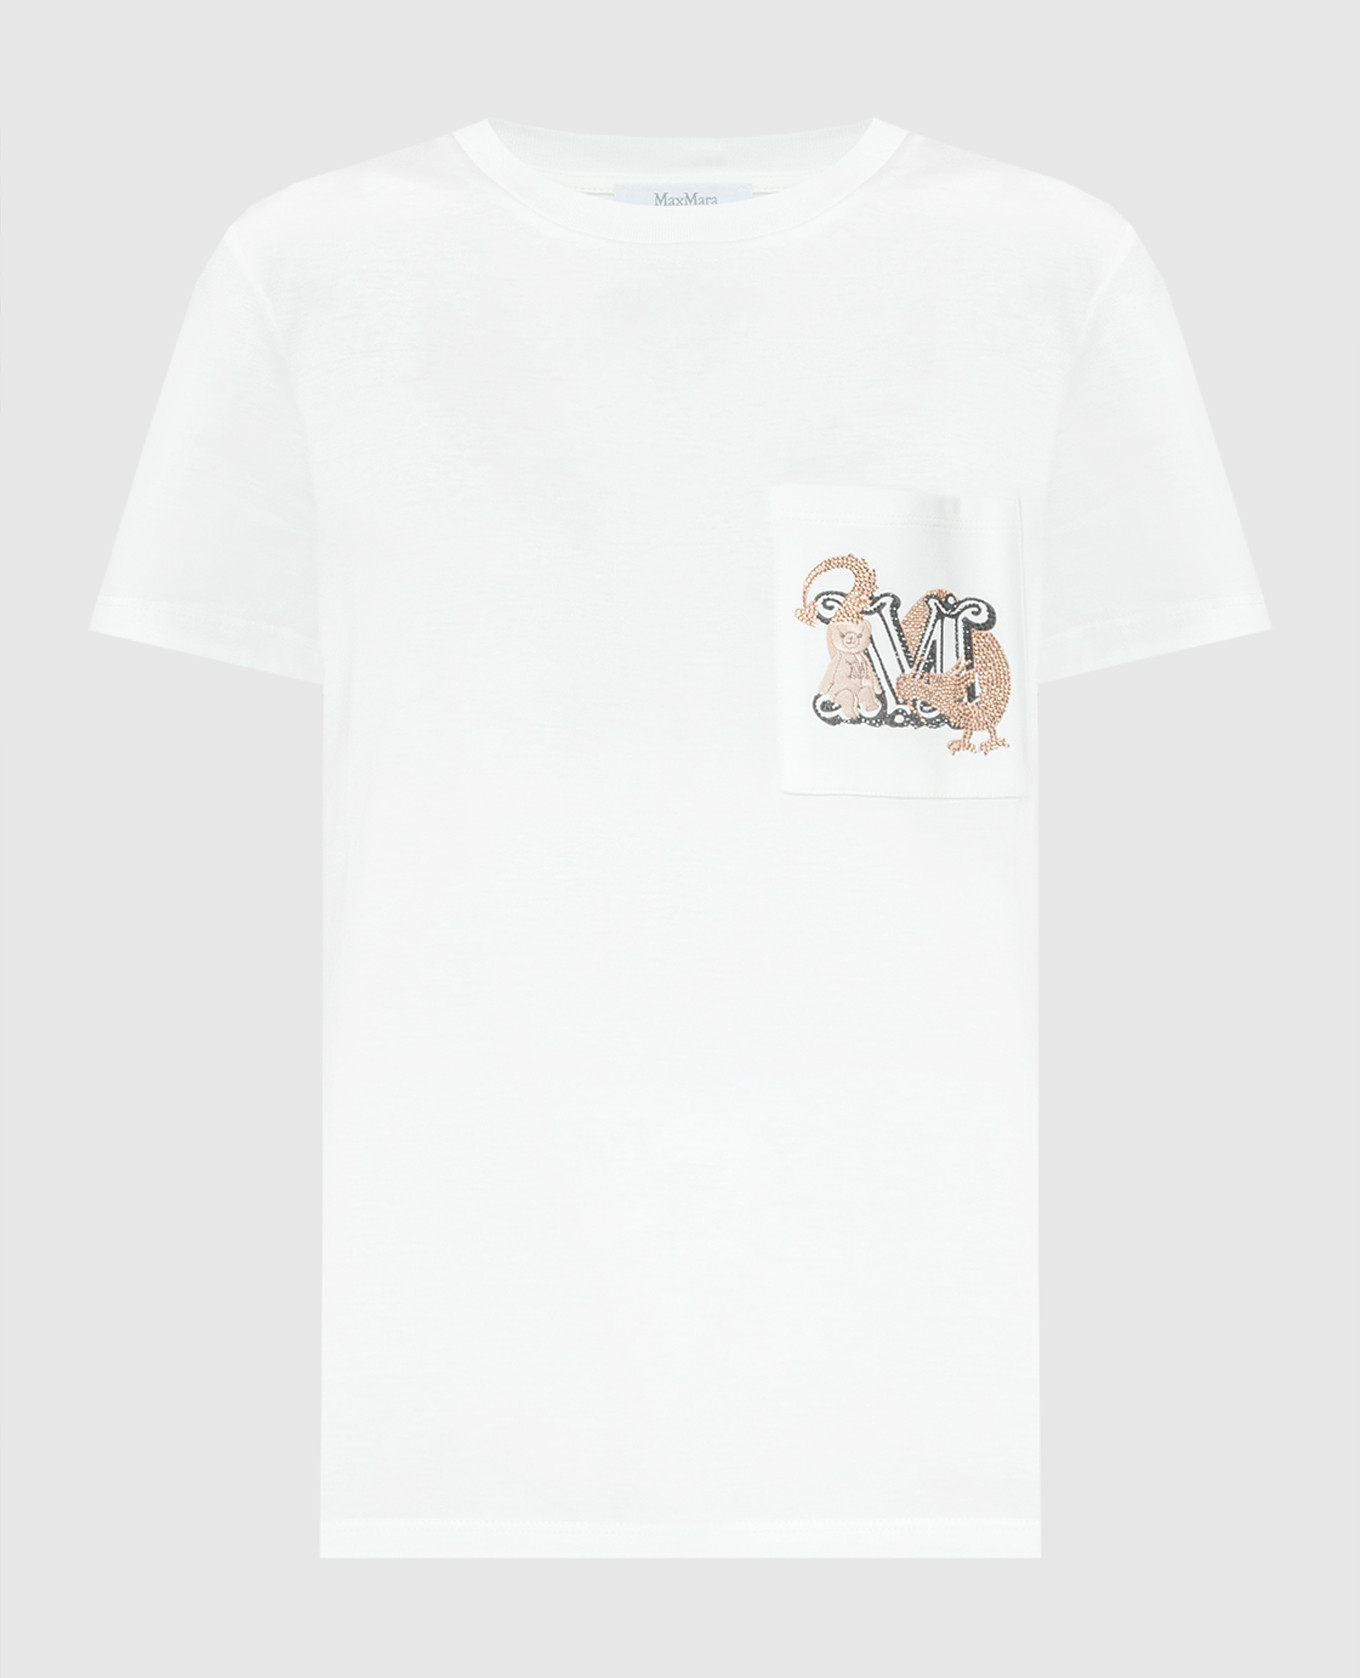 Белая футболка Elmo с вышивкой логотипа монограммы.